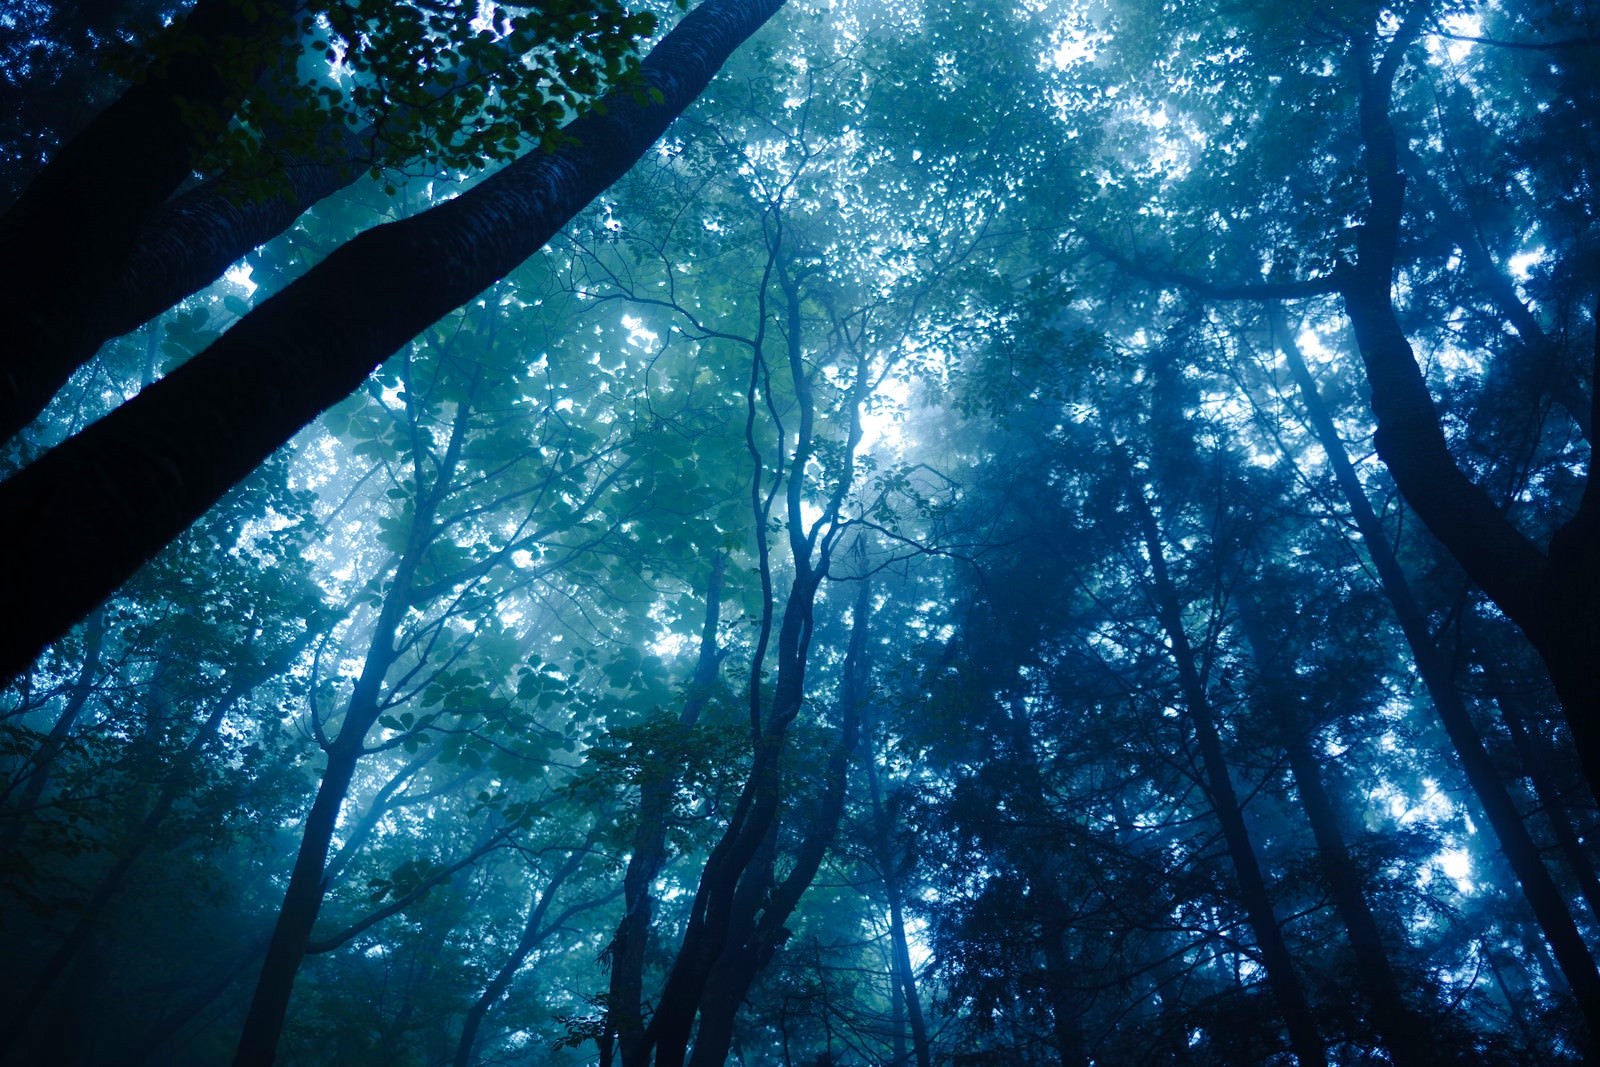 「緑の光と青い光が美しい霧の森」の写真